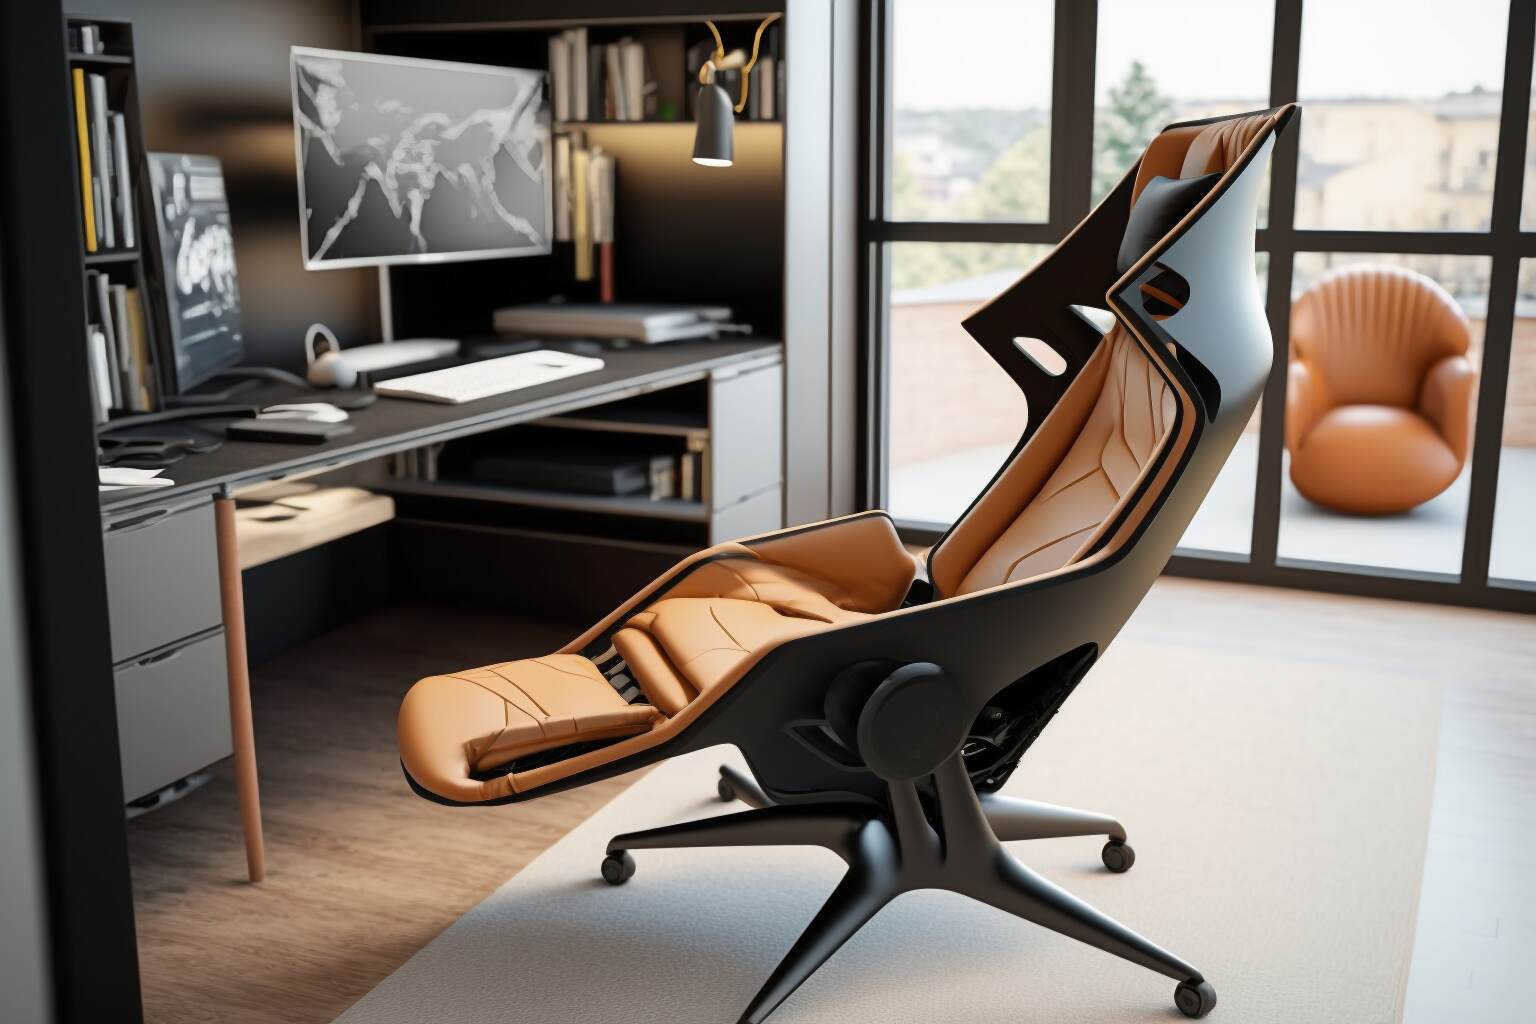 Ein Ergonomischer Lounge-Sessel Mit Schlankem Und Modernem Design, Perfekt Für Ein Stilvolles Wohnzimmer Oder Büro.